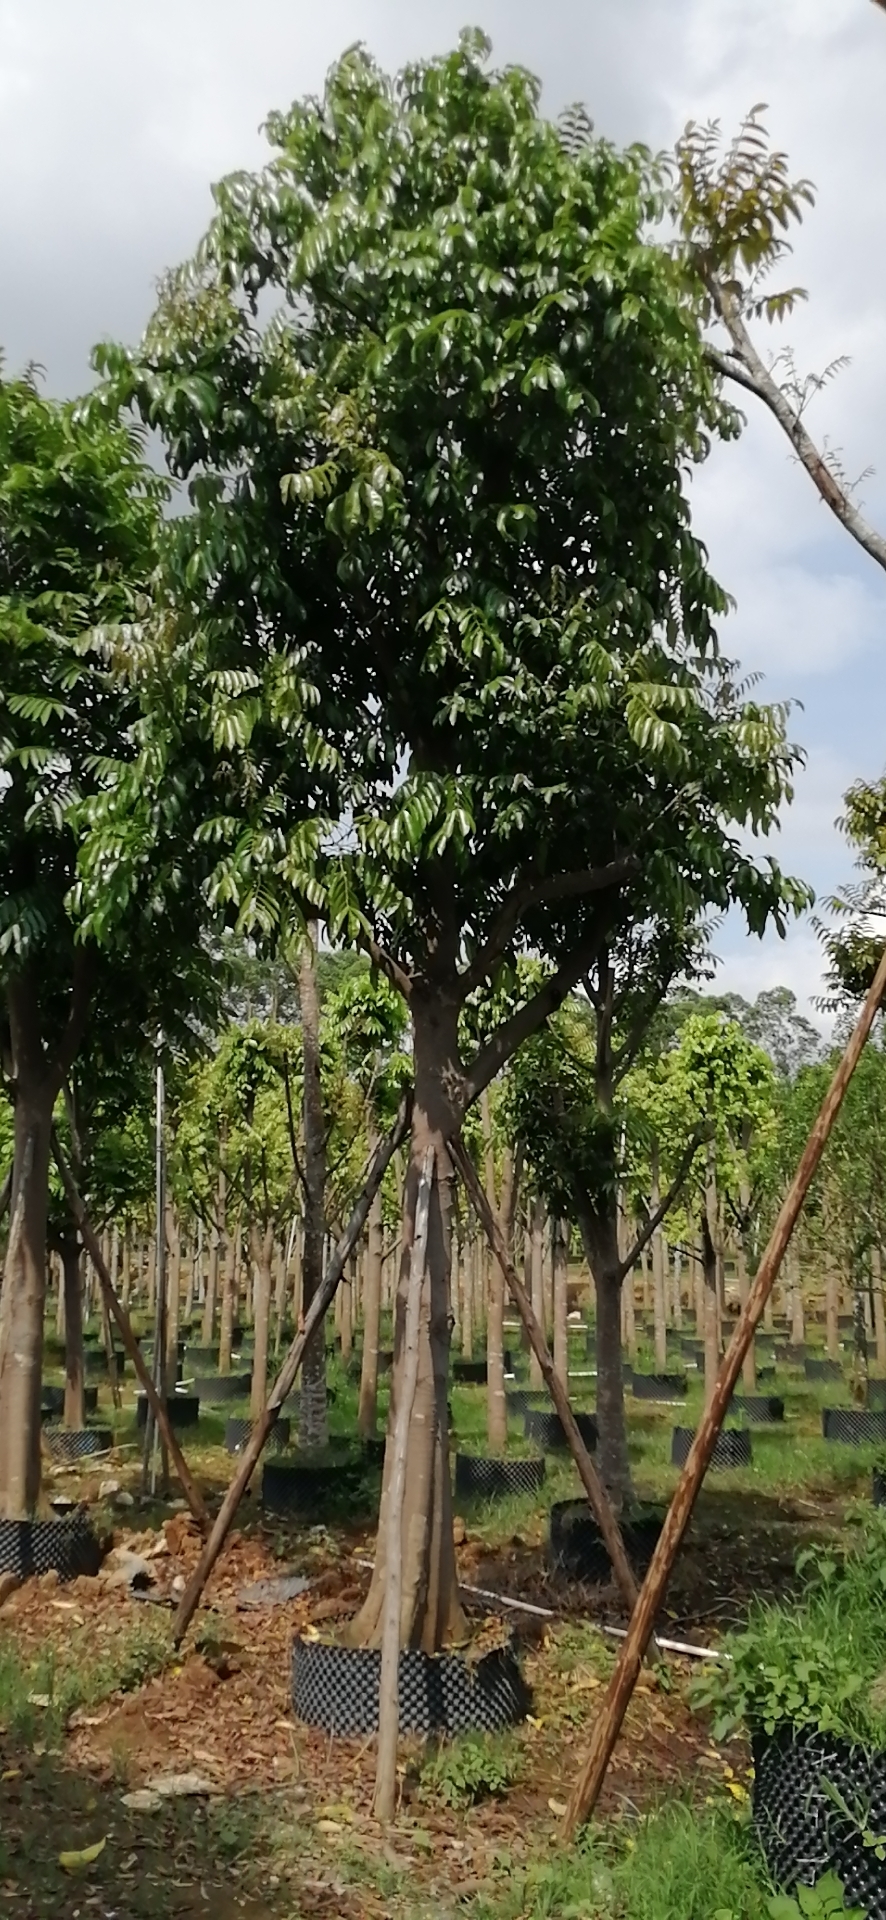 桂林仁面子树 直供仁面子树米径19公分 仁面子树批发价格 承接市政工程 园林绿化